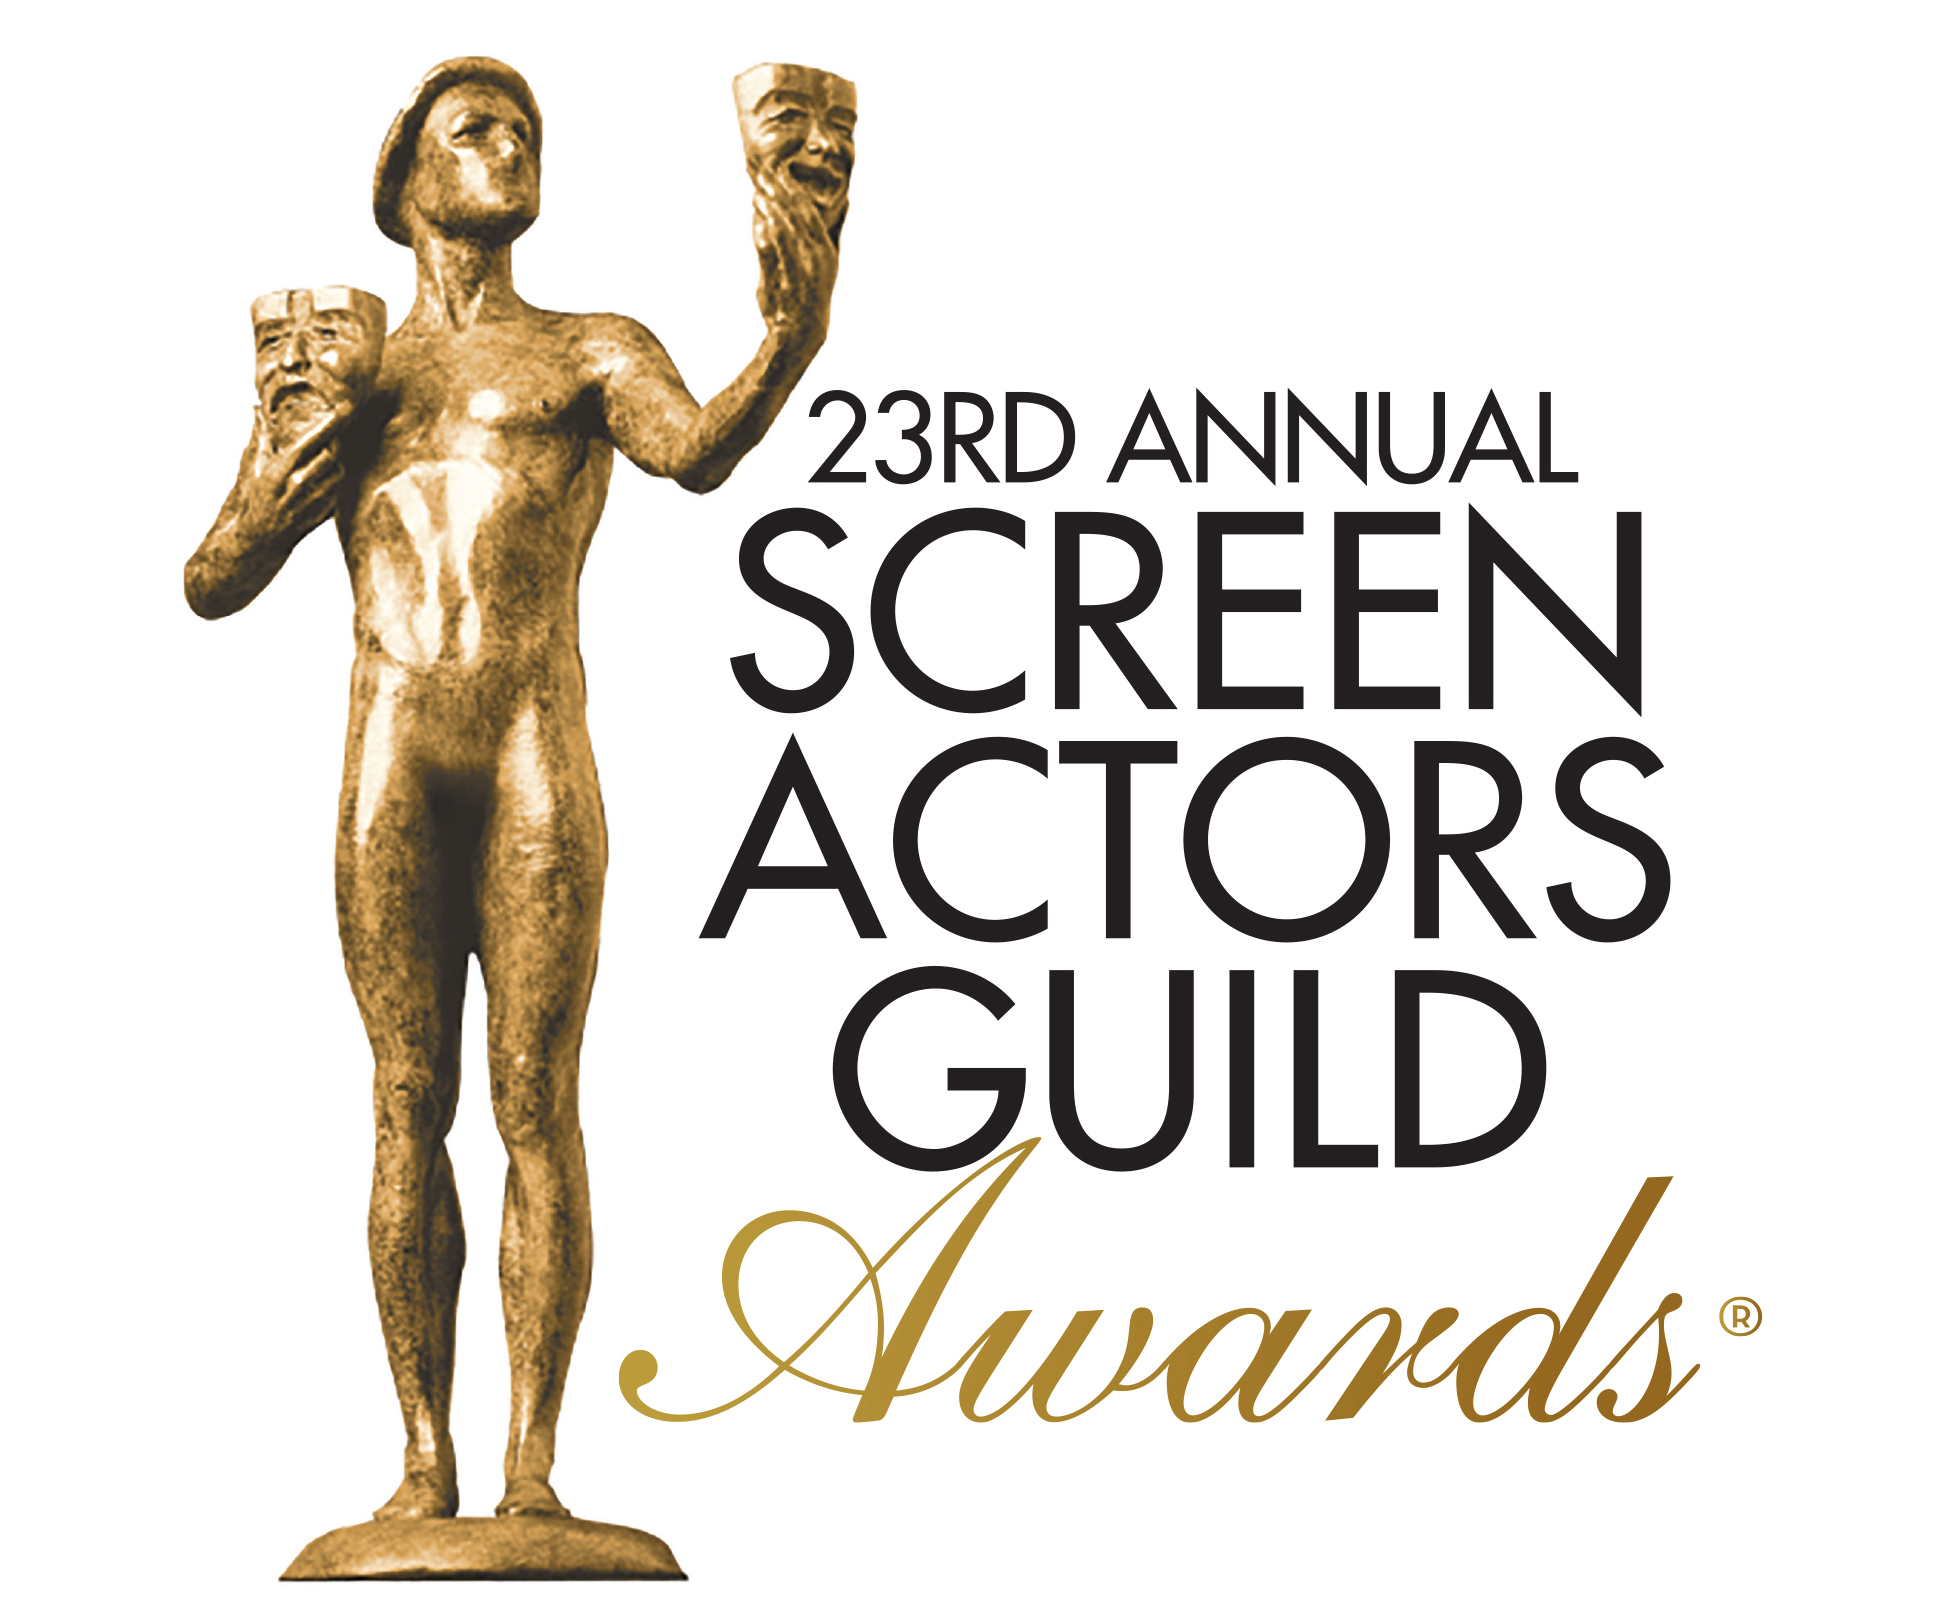 sag-actors-guild-awards-4chion-lifestyle